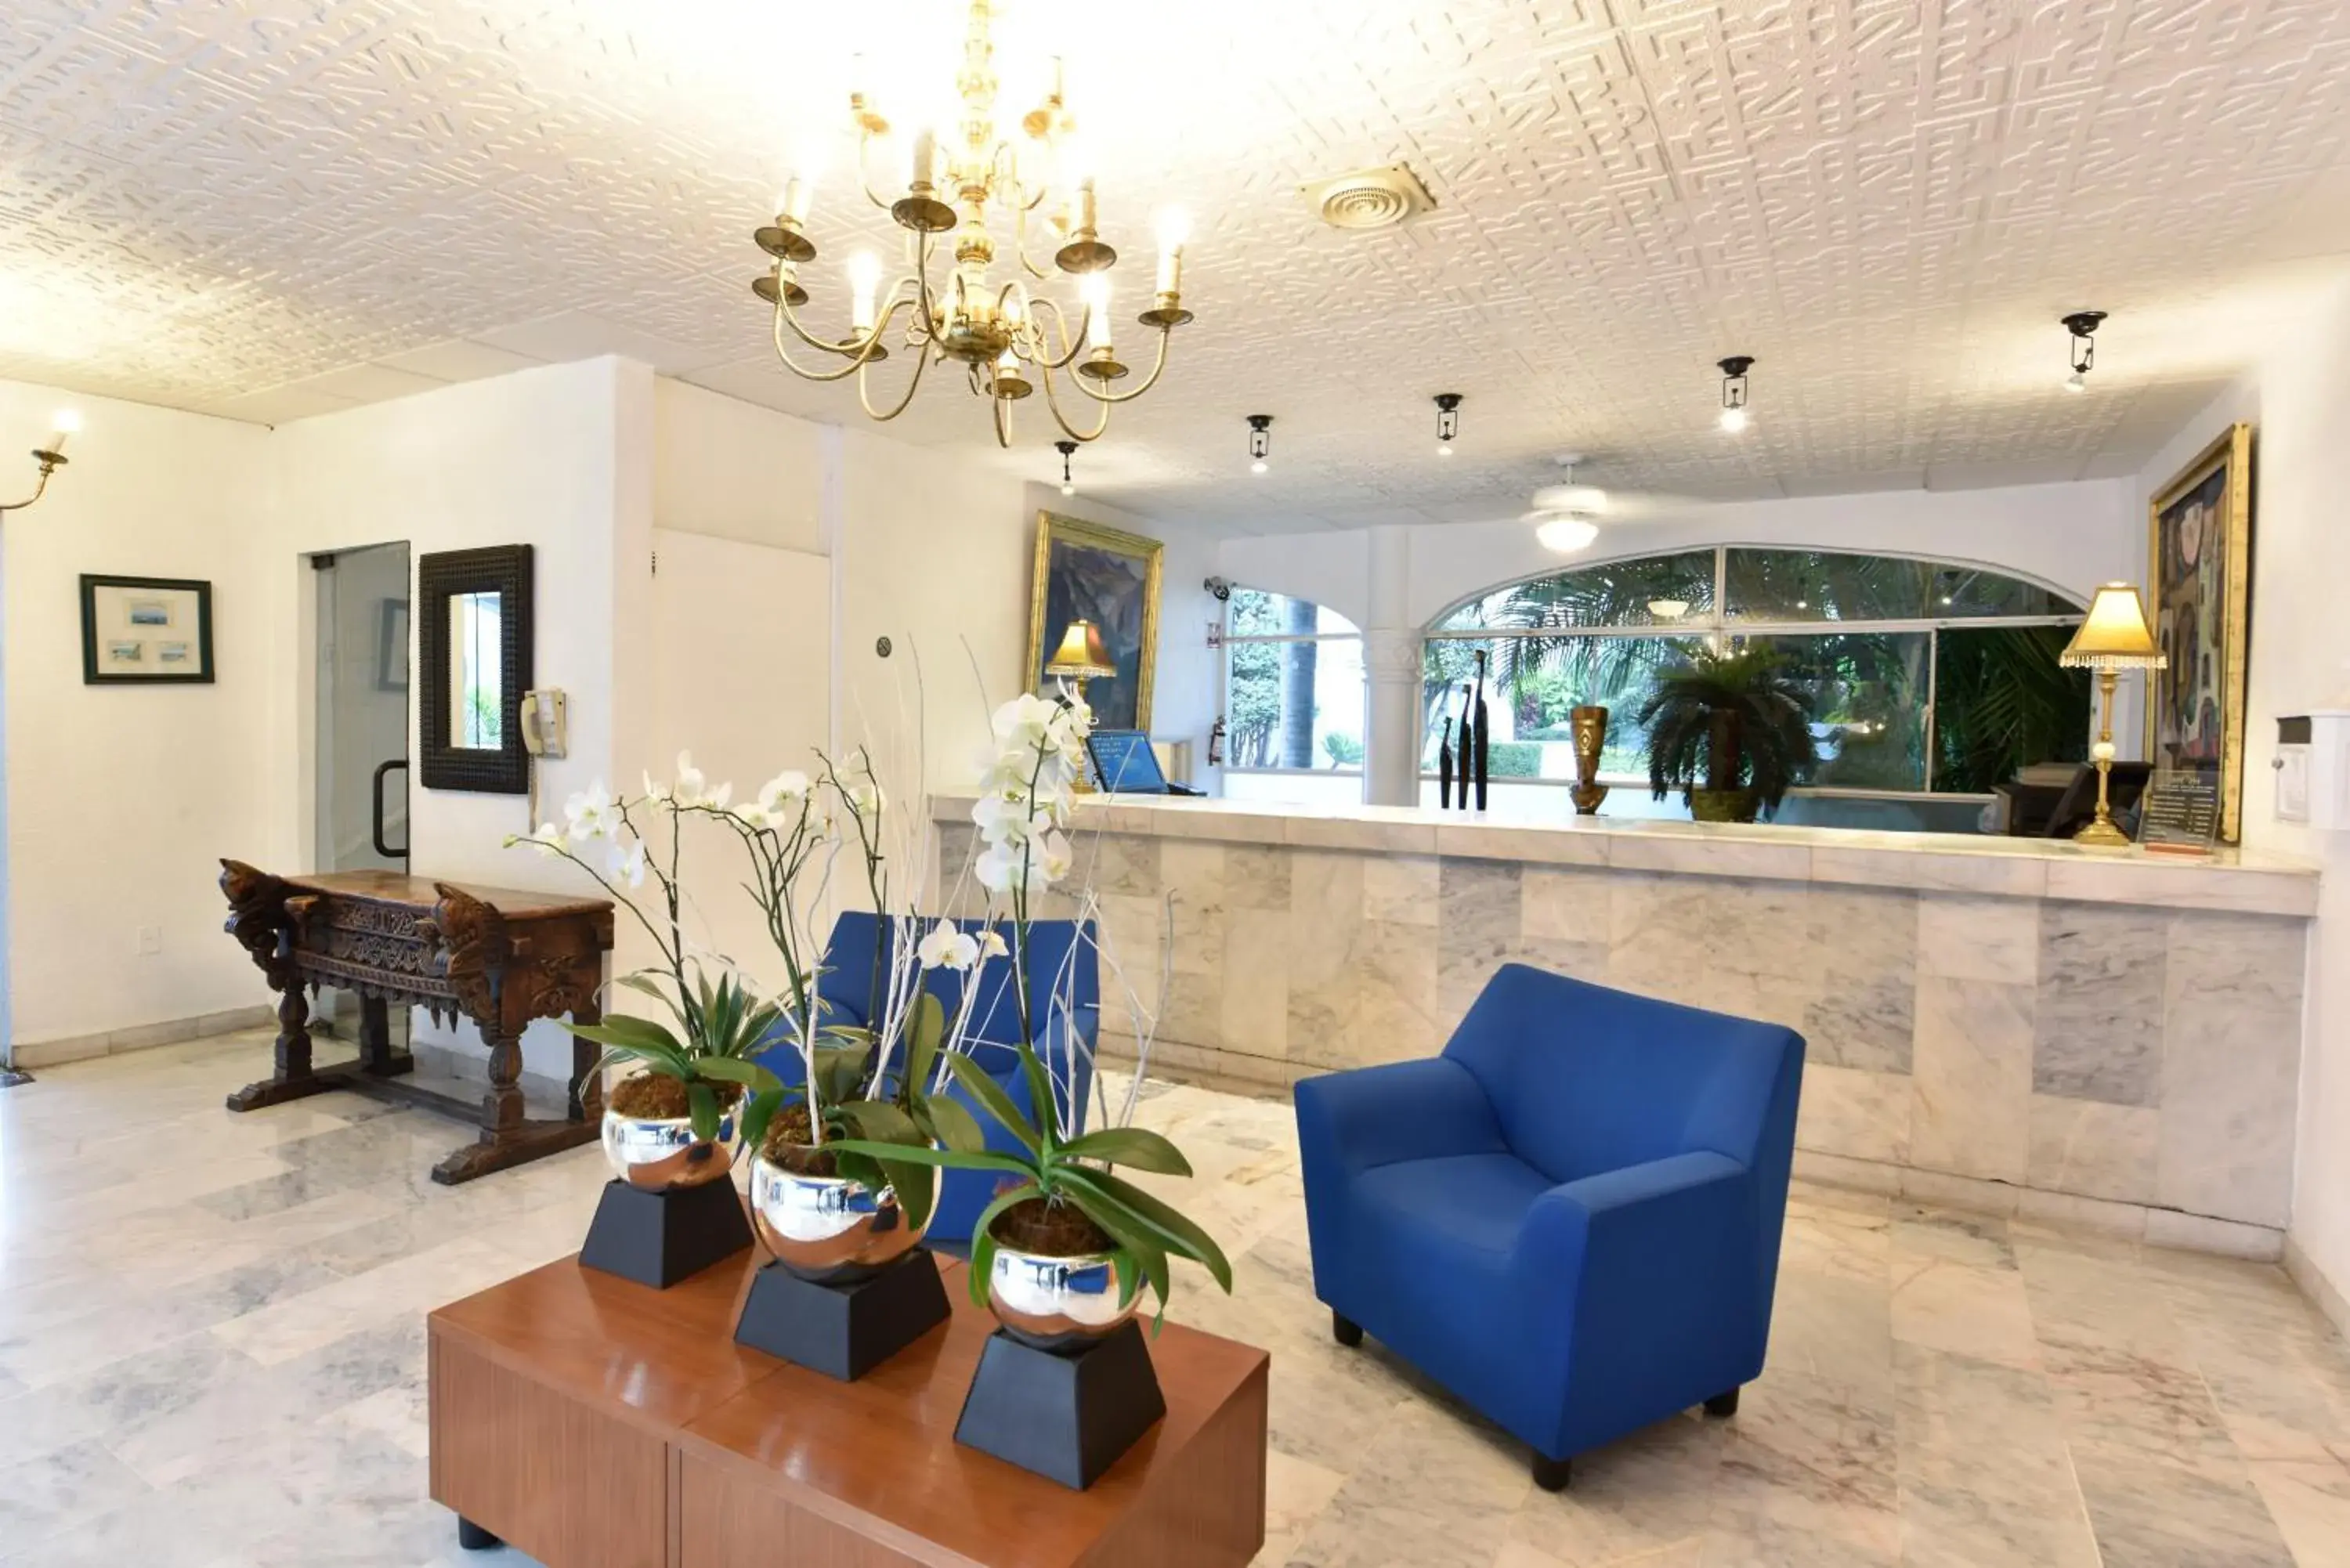 Lobby or reception in Villa Bejar Cuernavaca